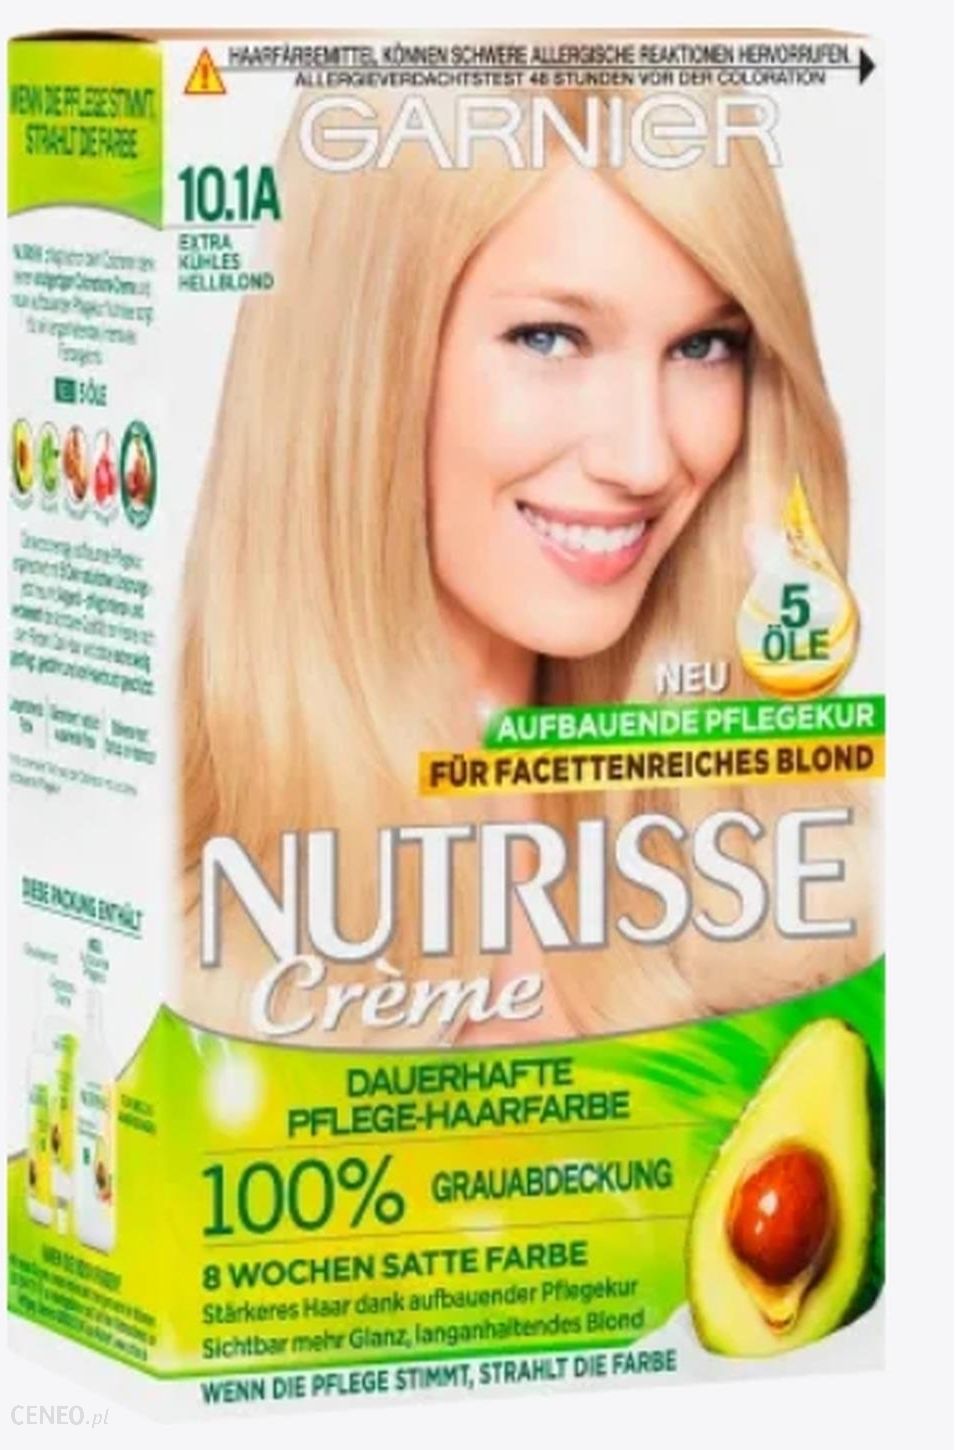 Garnier Nutrisse Farba - ceny 10.1A i do kuhles Extra na Hellblond Opinie włosów